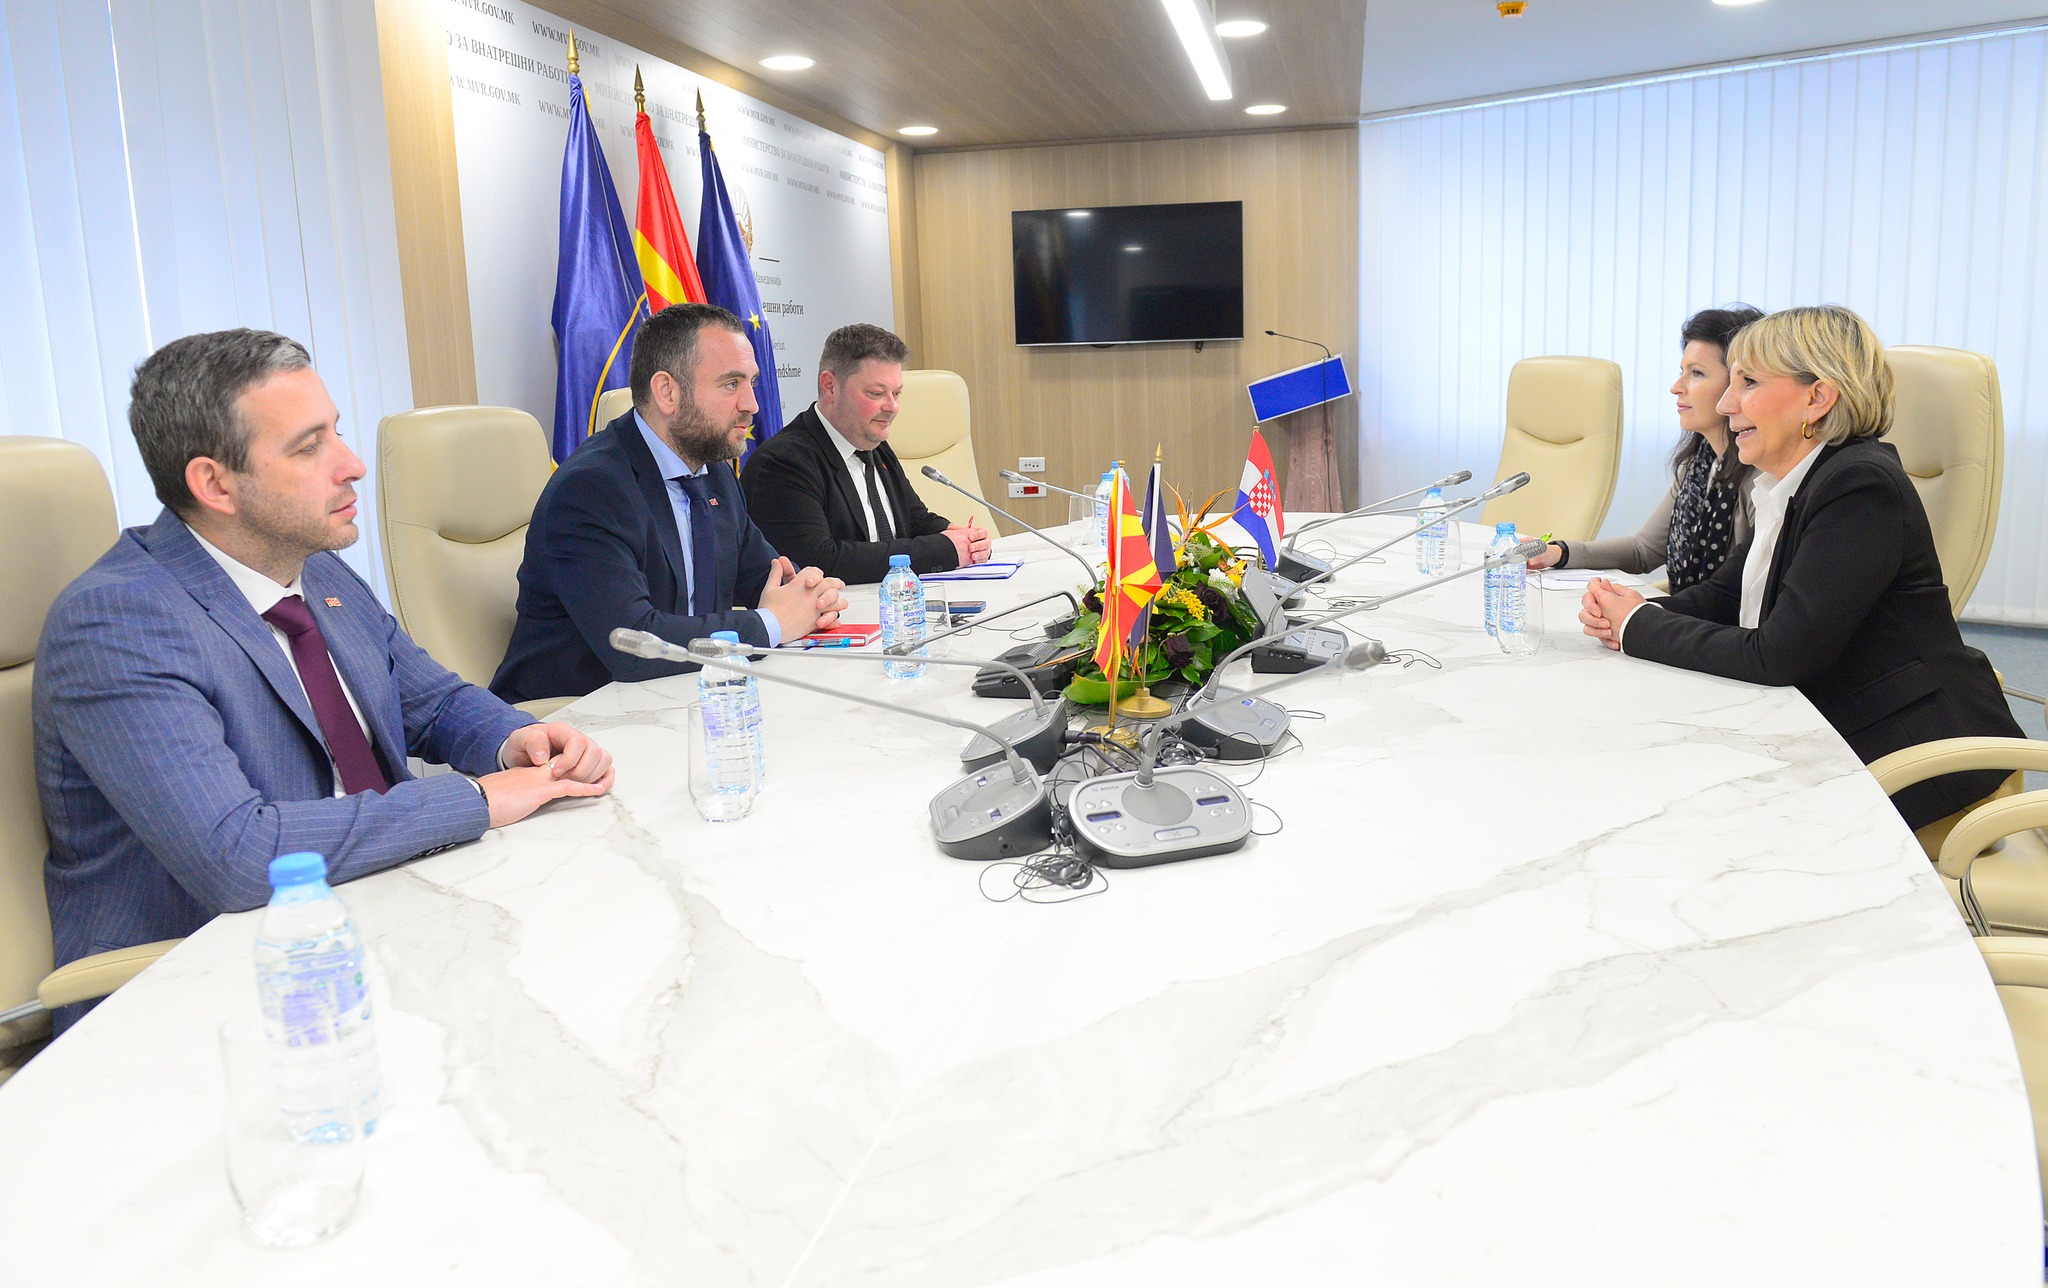 Ministri i Brendshëm teknik Pançe Toshkovski në takim me ambasadoren e Kroacisë në RMV. Foto: Faqja zyrtare e Pançe Toshkovskit në Facebook